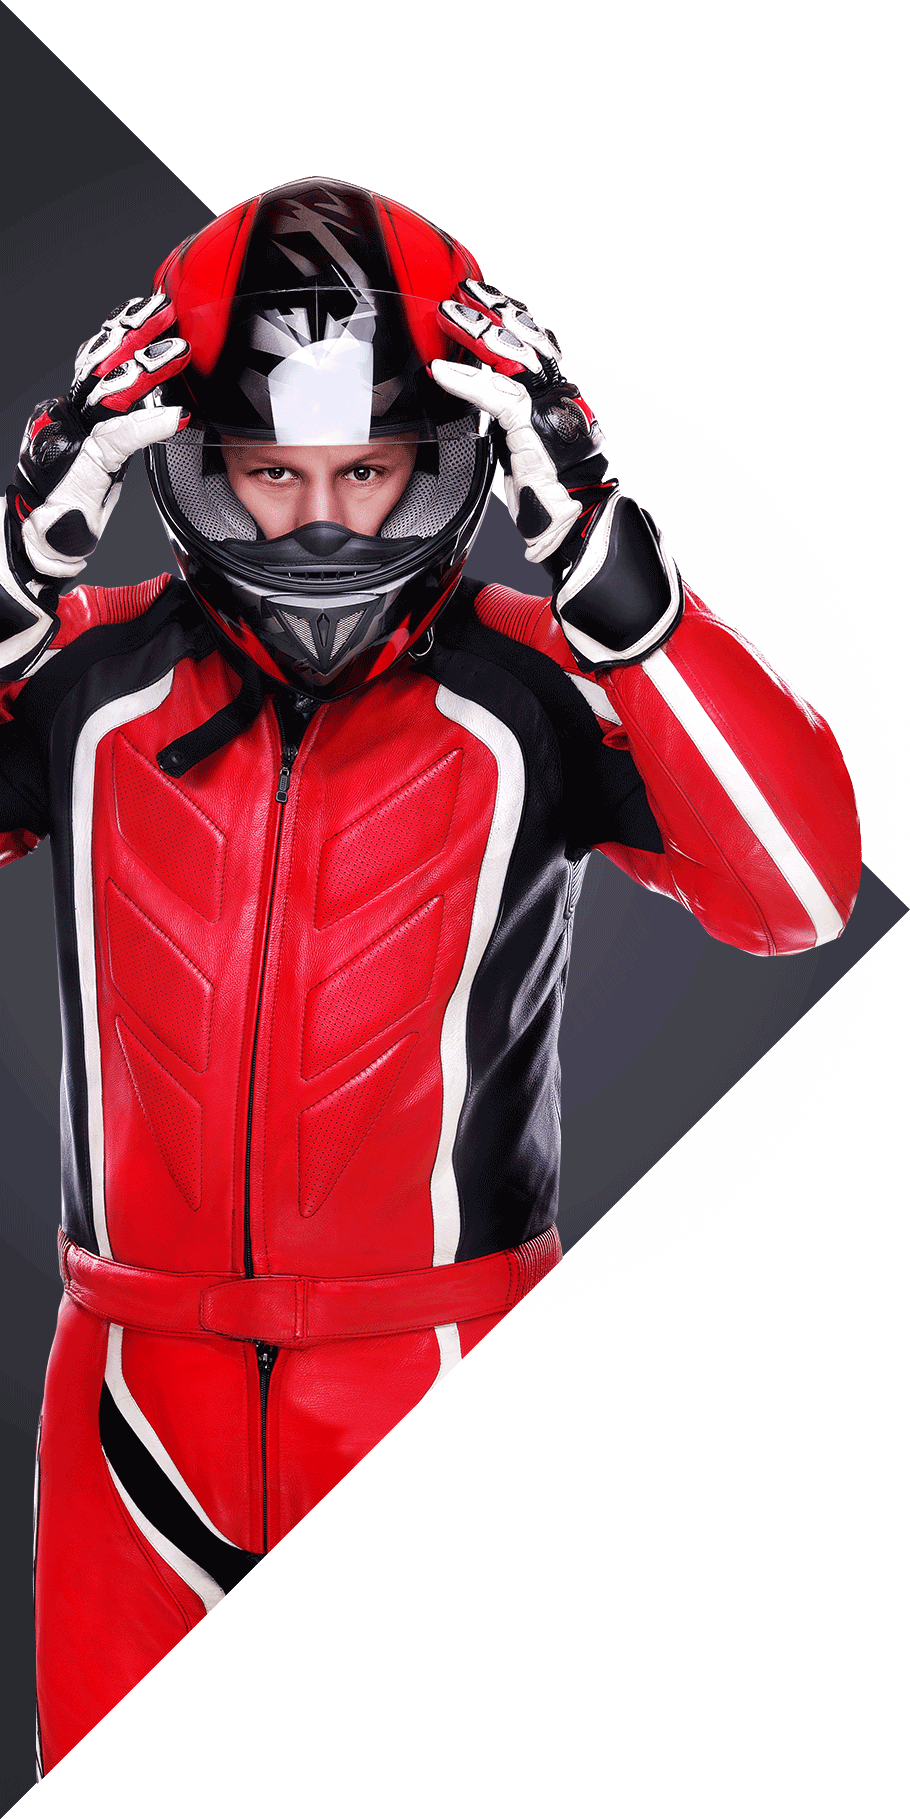 MotoWall.com - darmowe ogłoszenia sprzedaży motocykli, akcesoriów motocyklowych, cześci zamiennych do motocykli.